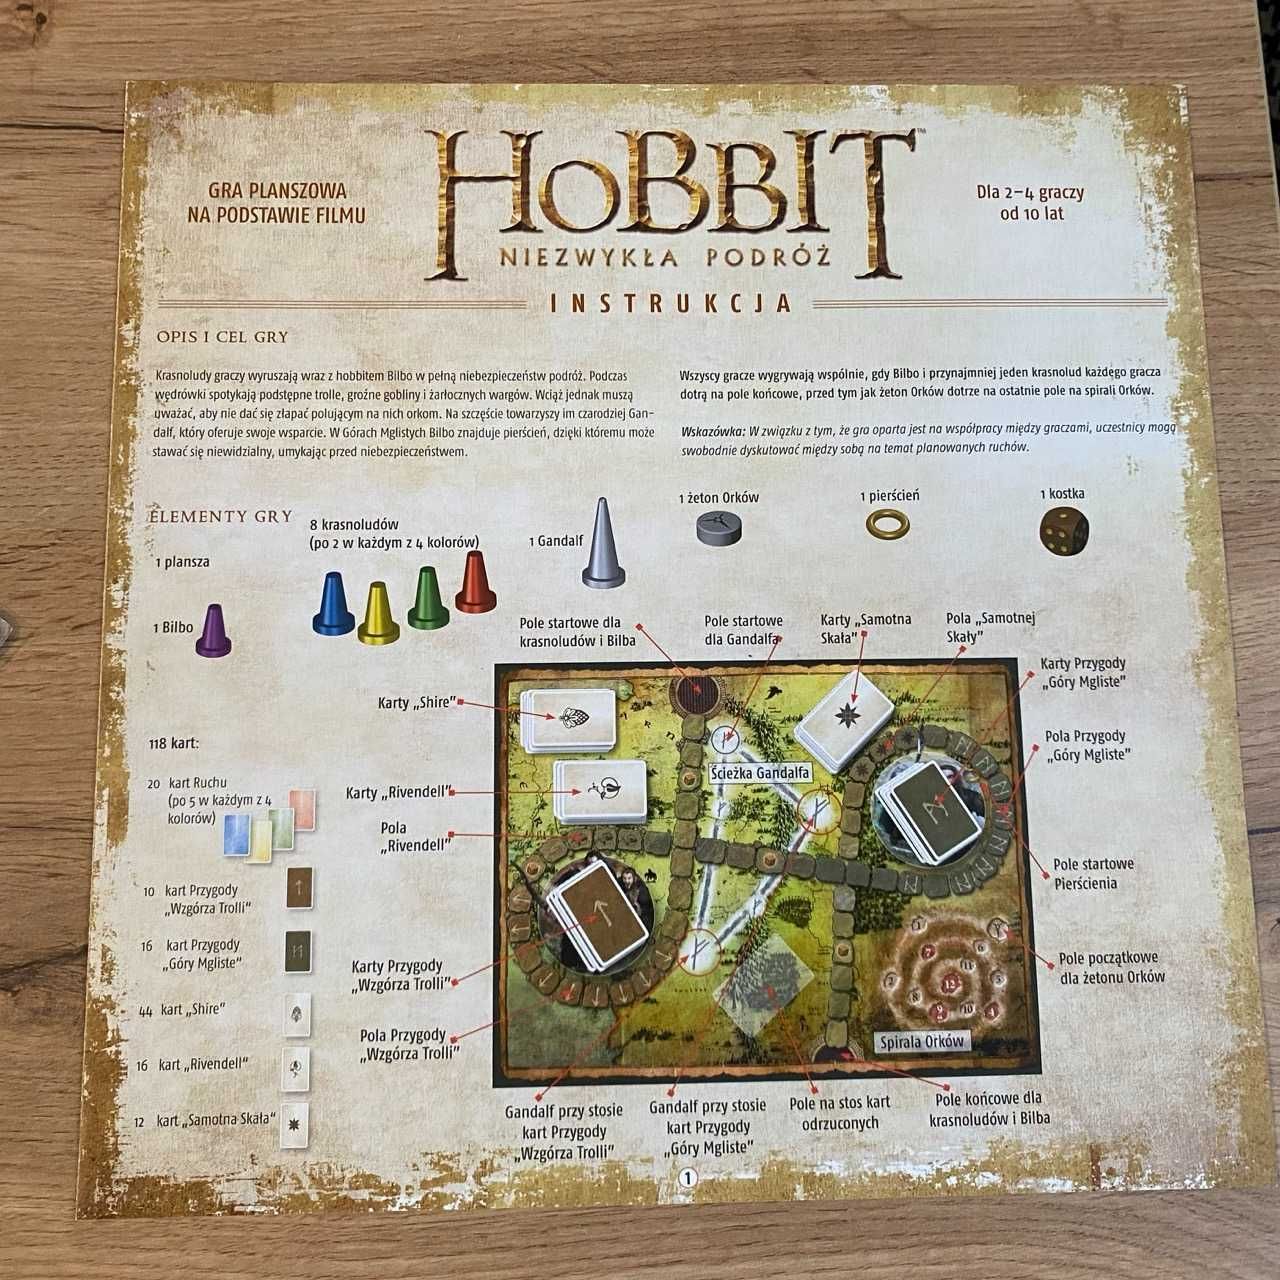 Hobbit Niezwykła podróż - Galakta - karty w koszulkach